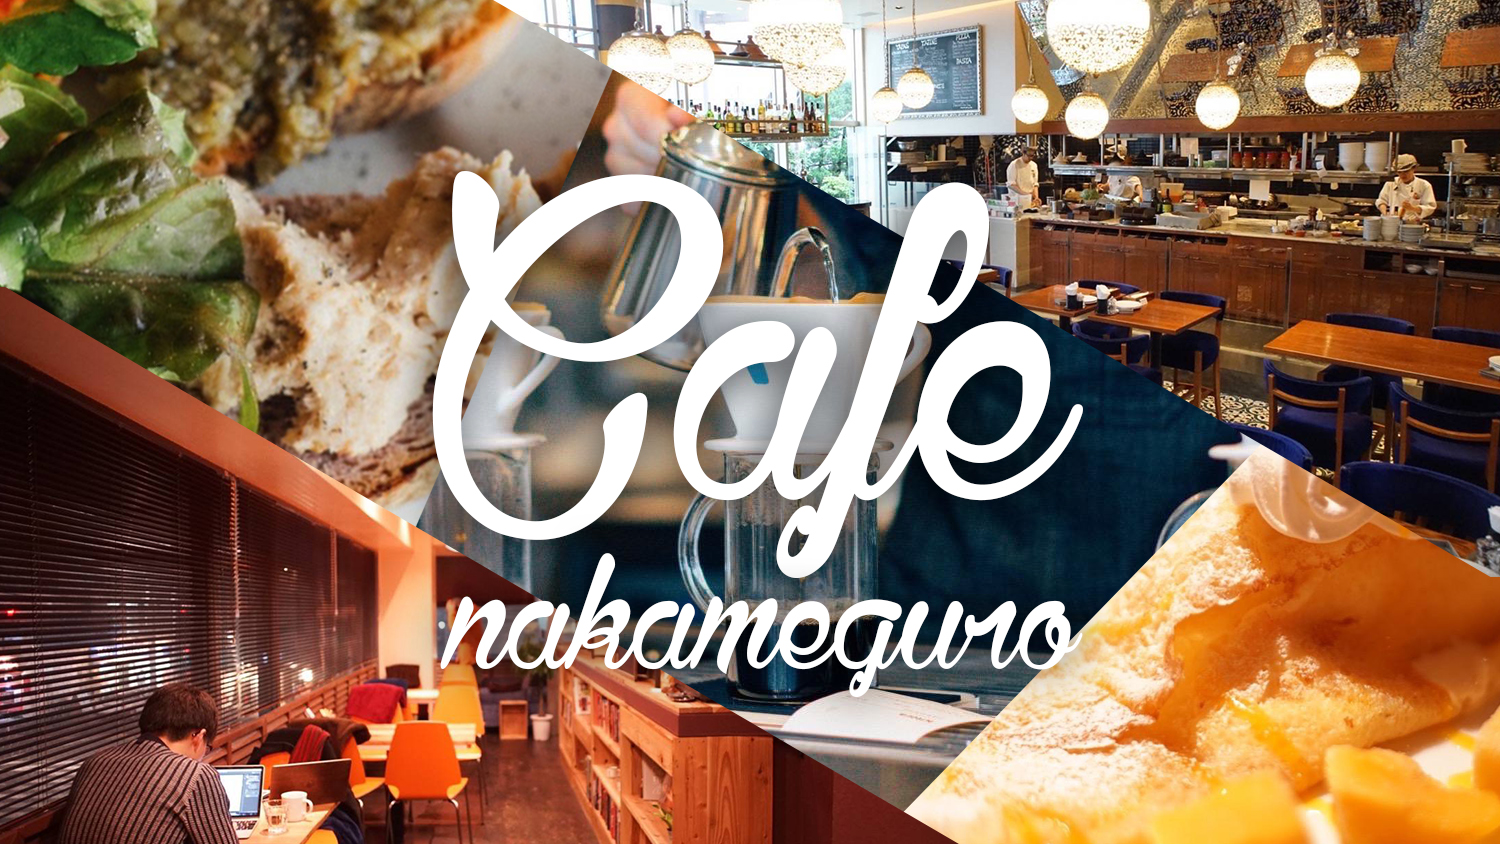 Nakameguro cafe